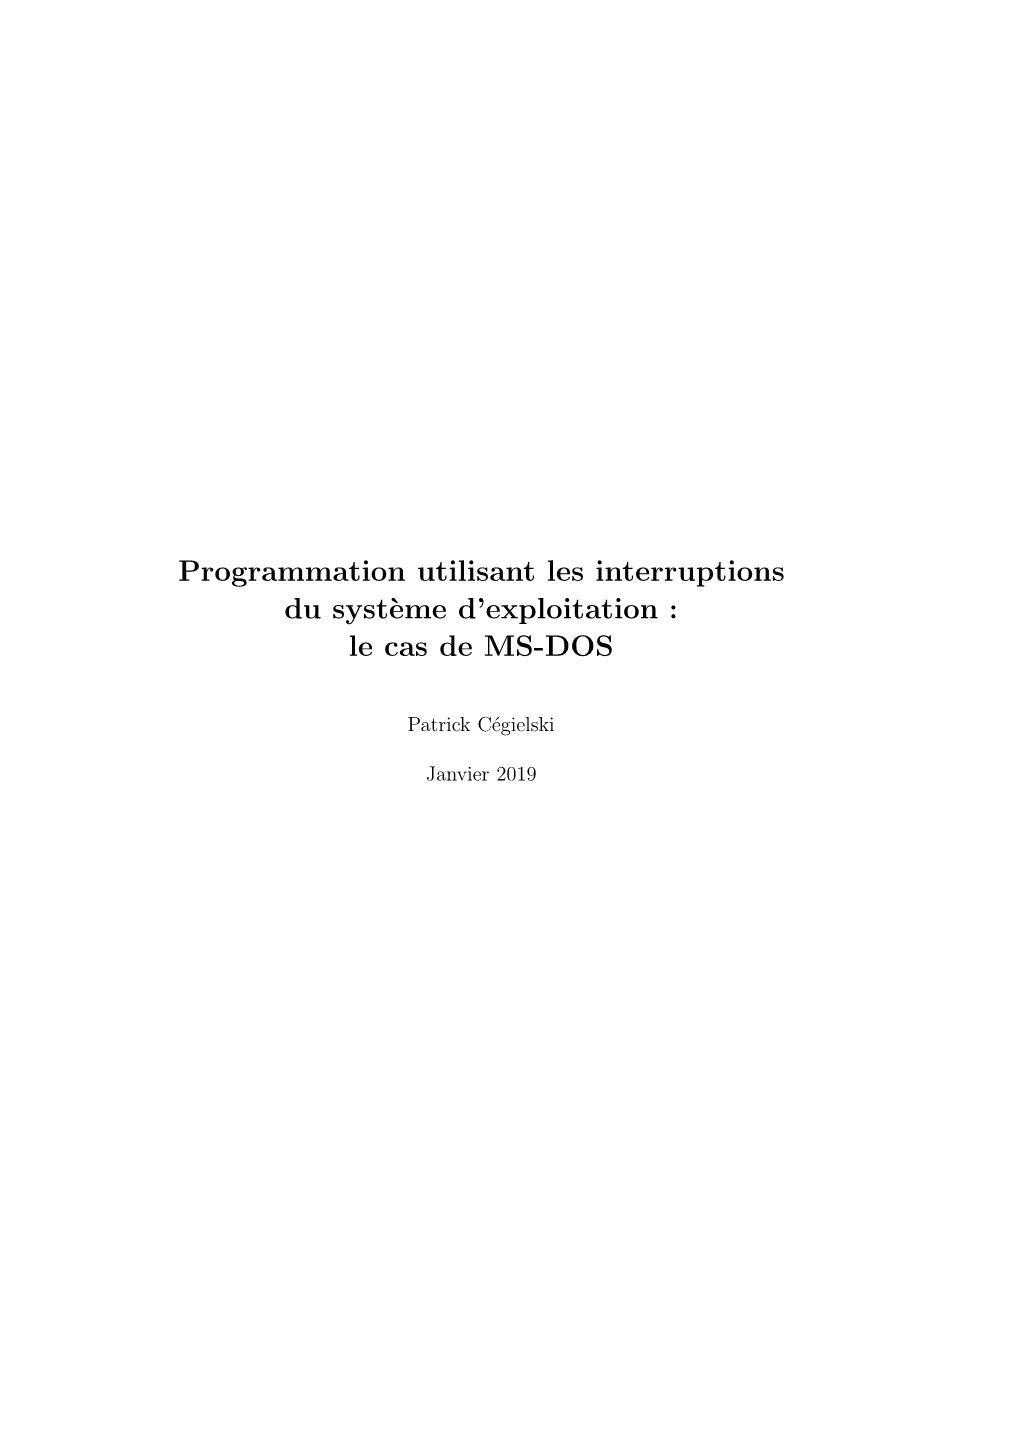 Programmation Utilisant Les Interruptions Du Syst`Eme D’Exploitation : Le Cas De MS-DOS